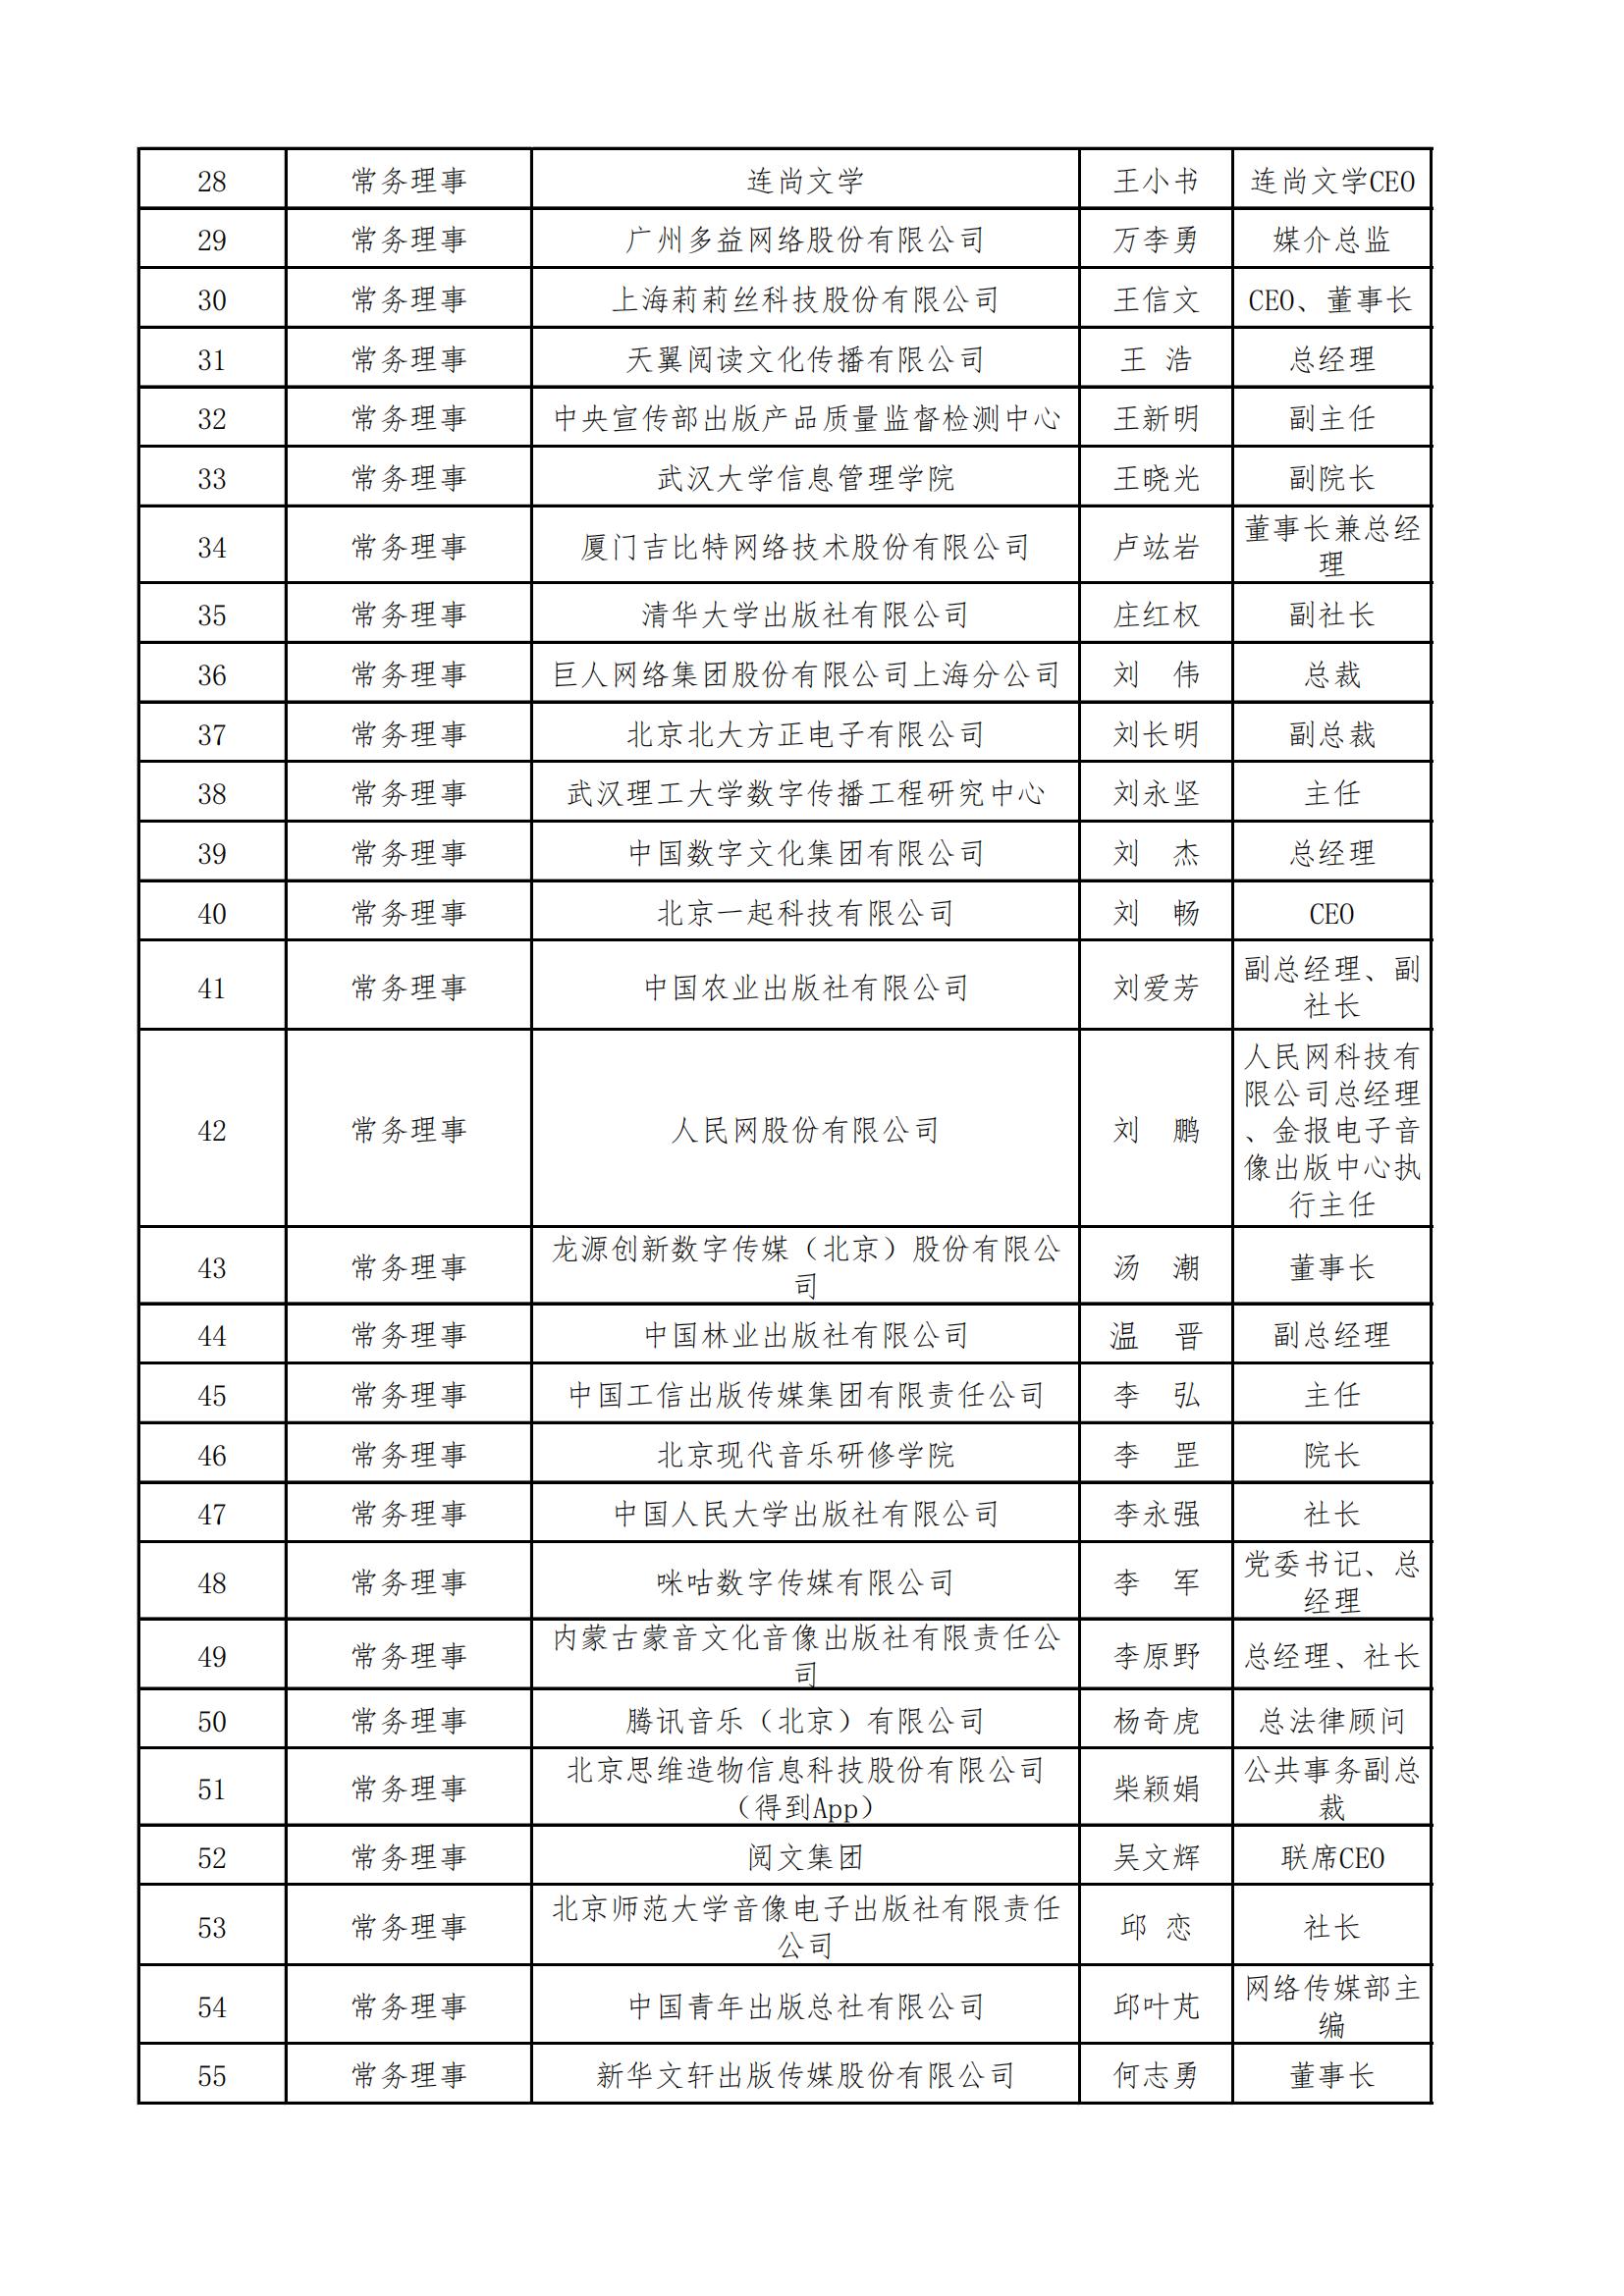 中国音像与数字出版协会第五届理事会名录_01.jpg